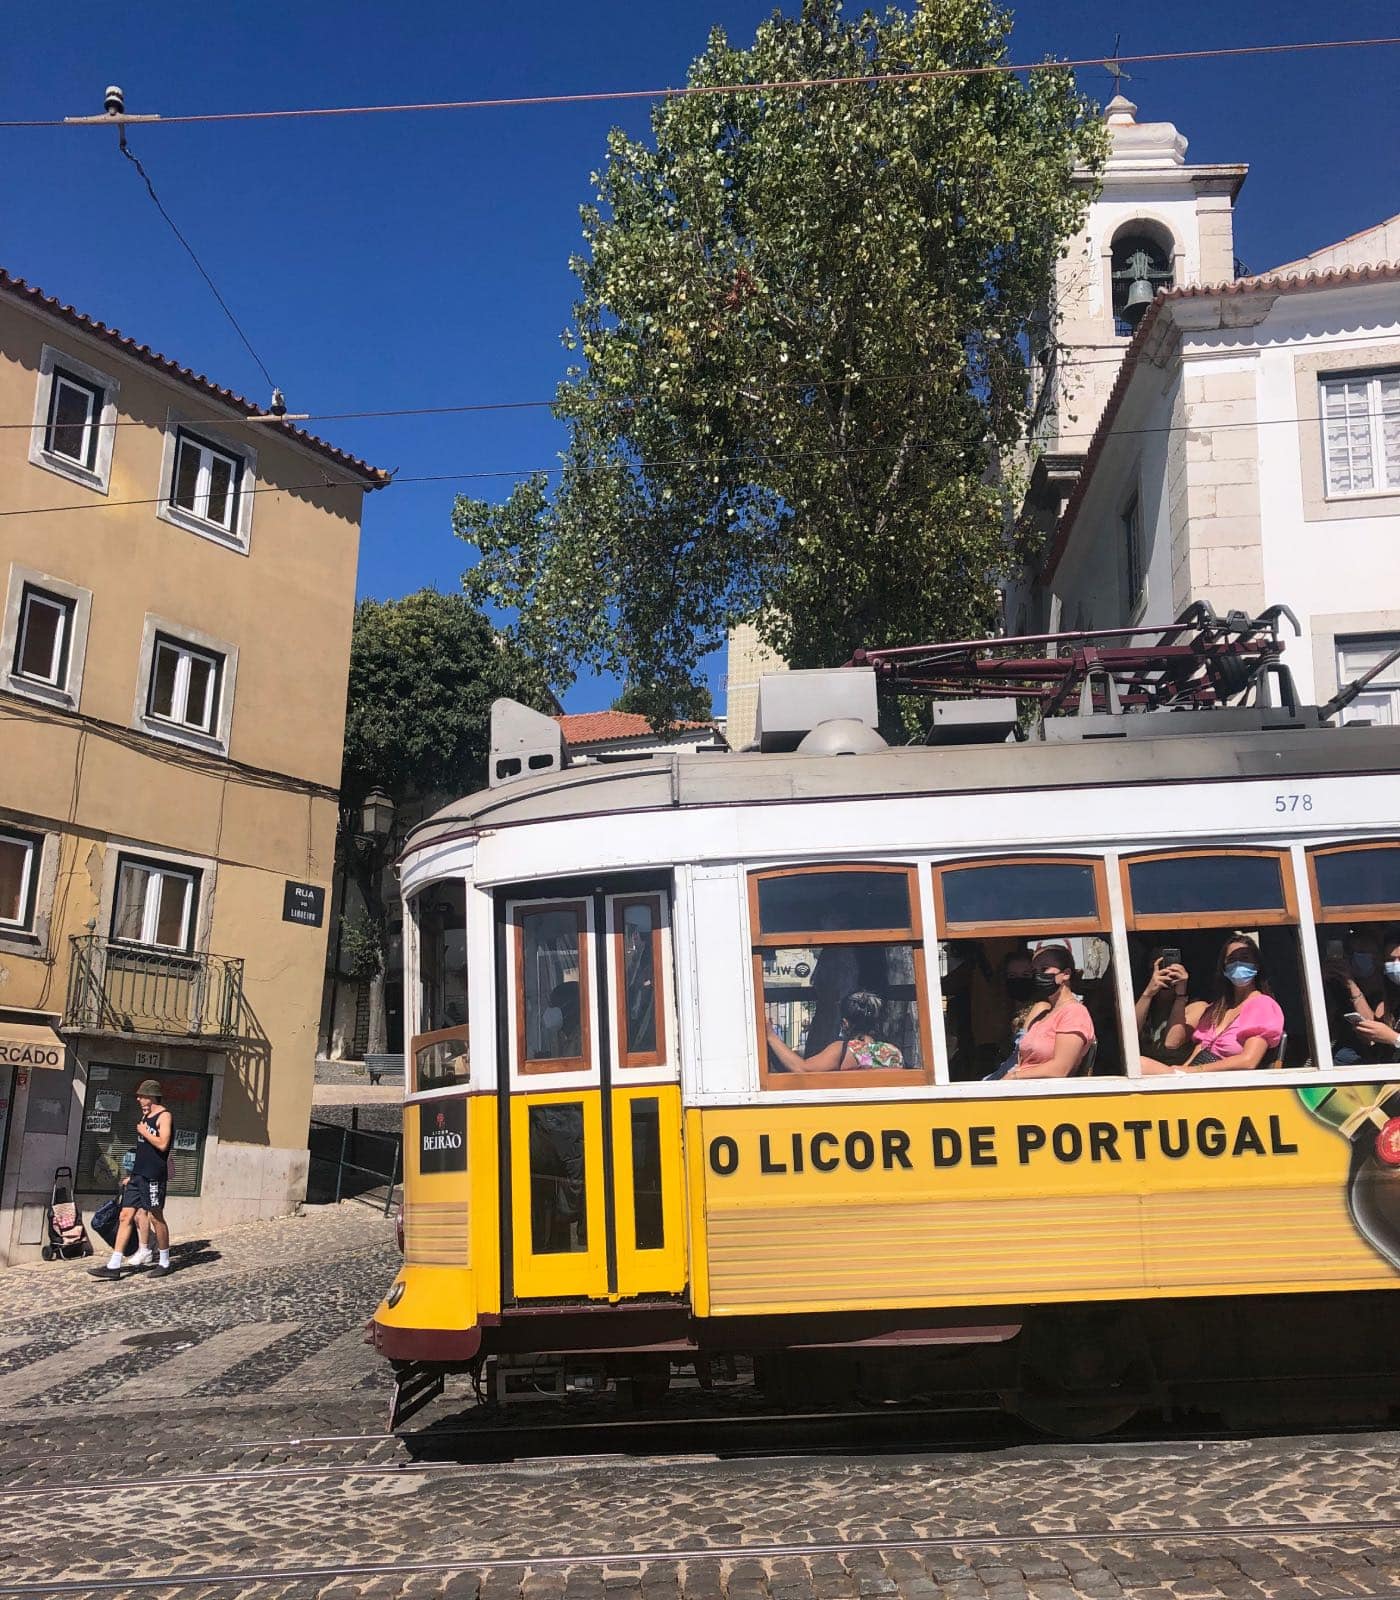 Zum Stadtbild In Lissabon Gehören Die Berühmten Elétricos // Himbeer